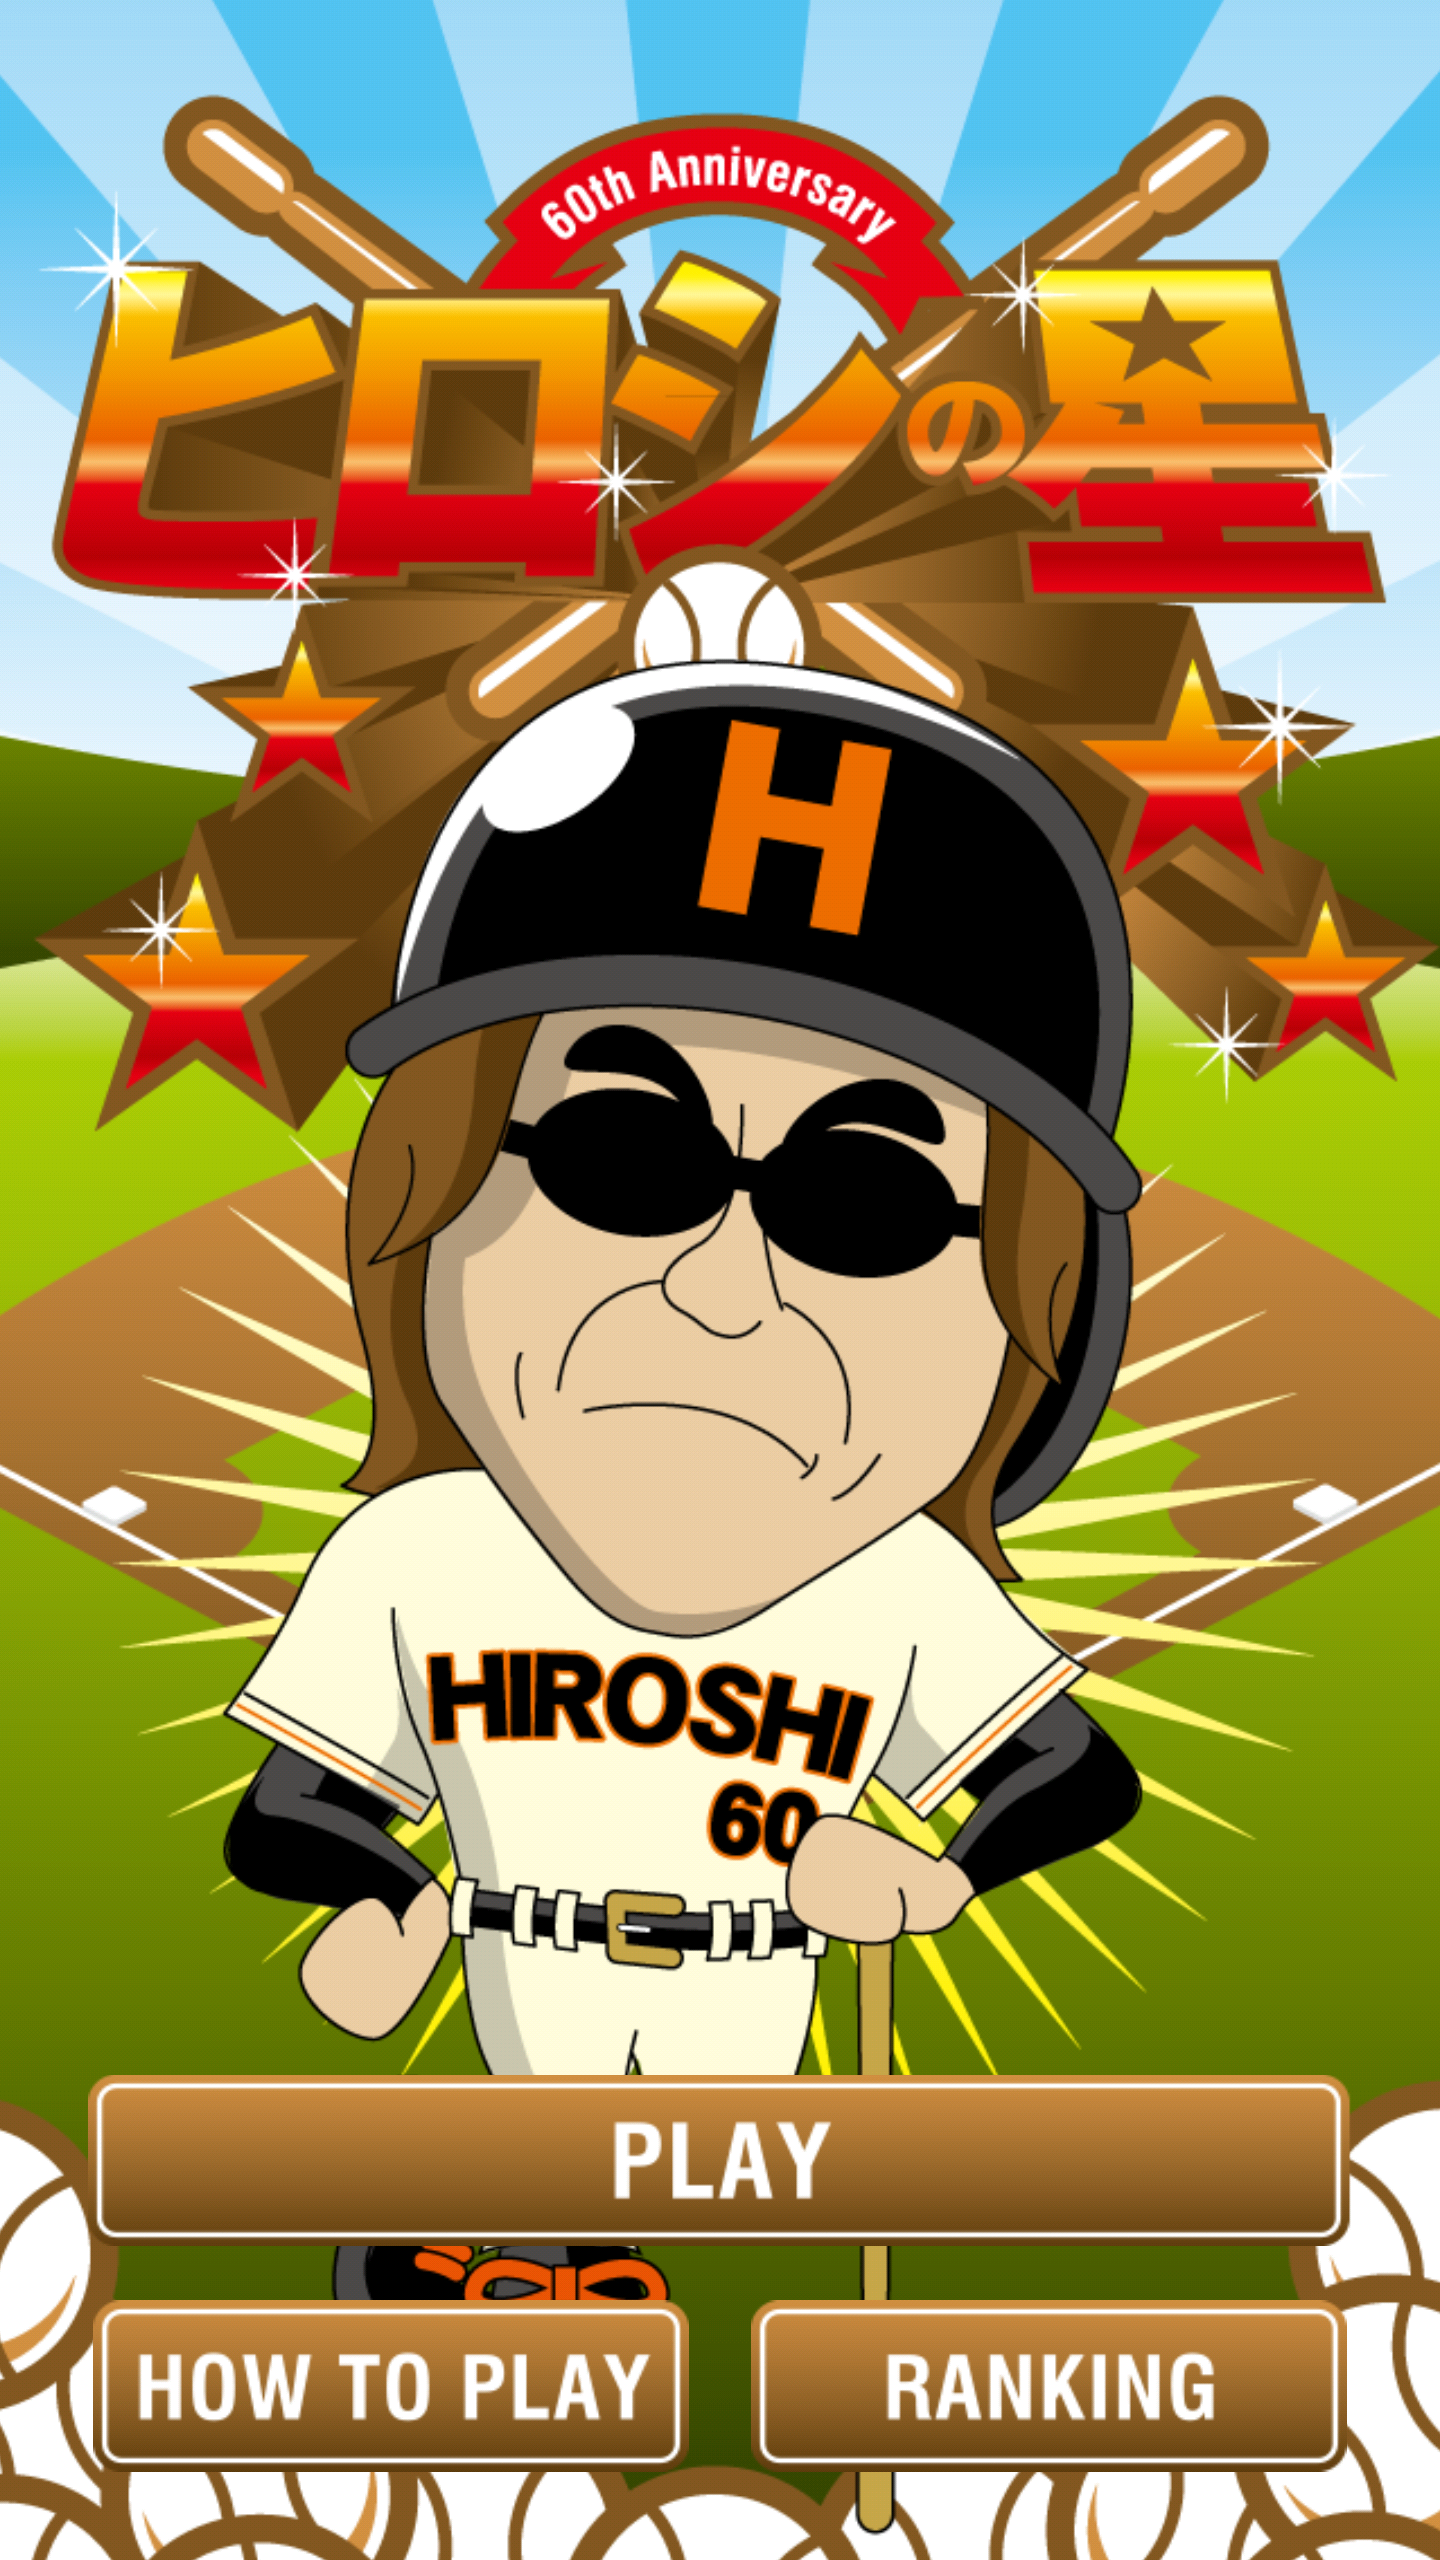 Screenshot 1 of la estrella de hiroshi 1.0.0